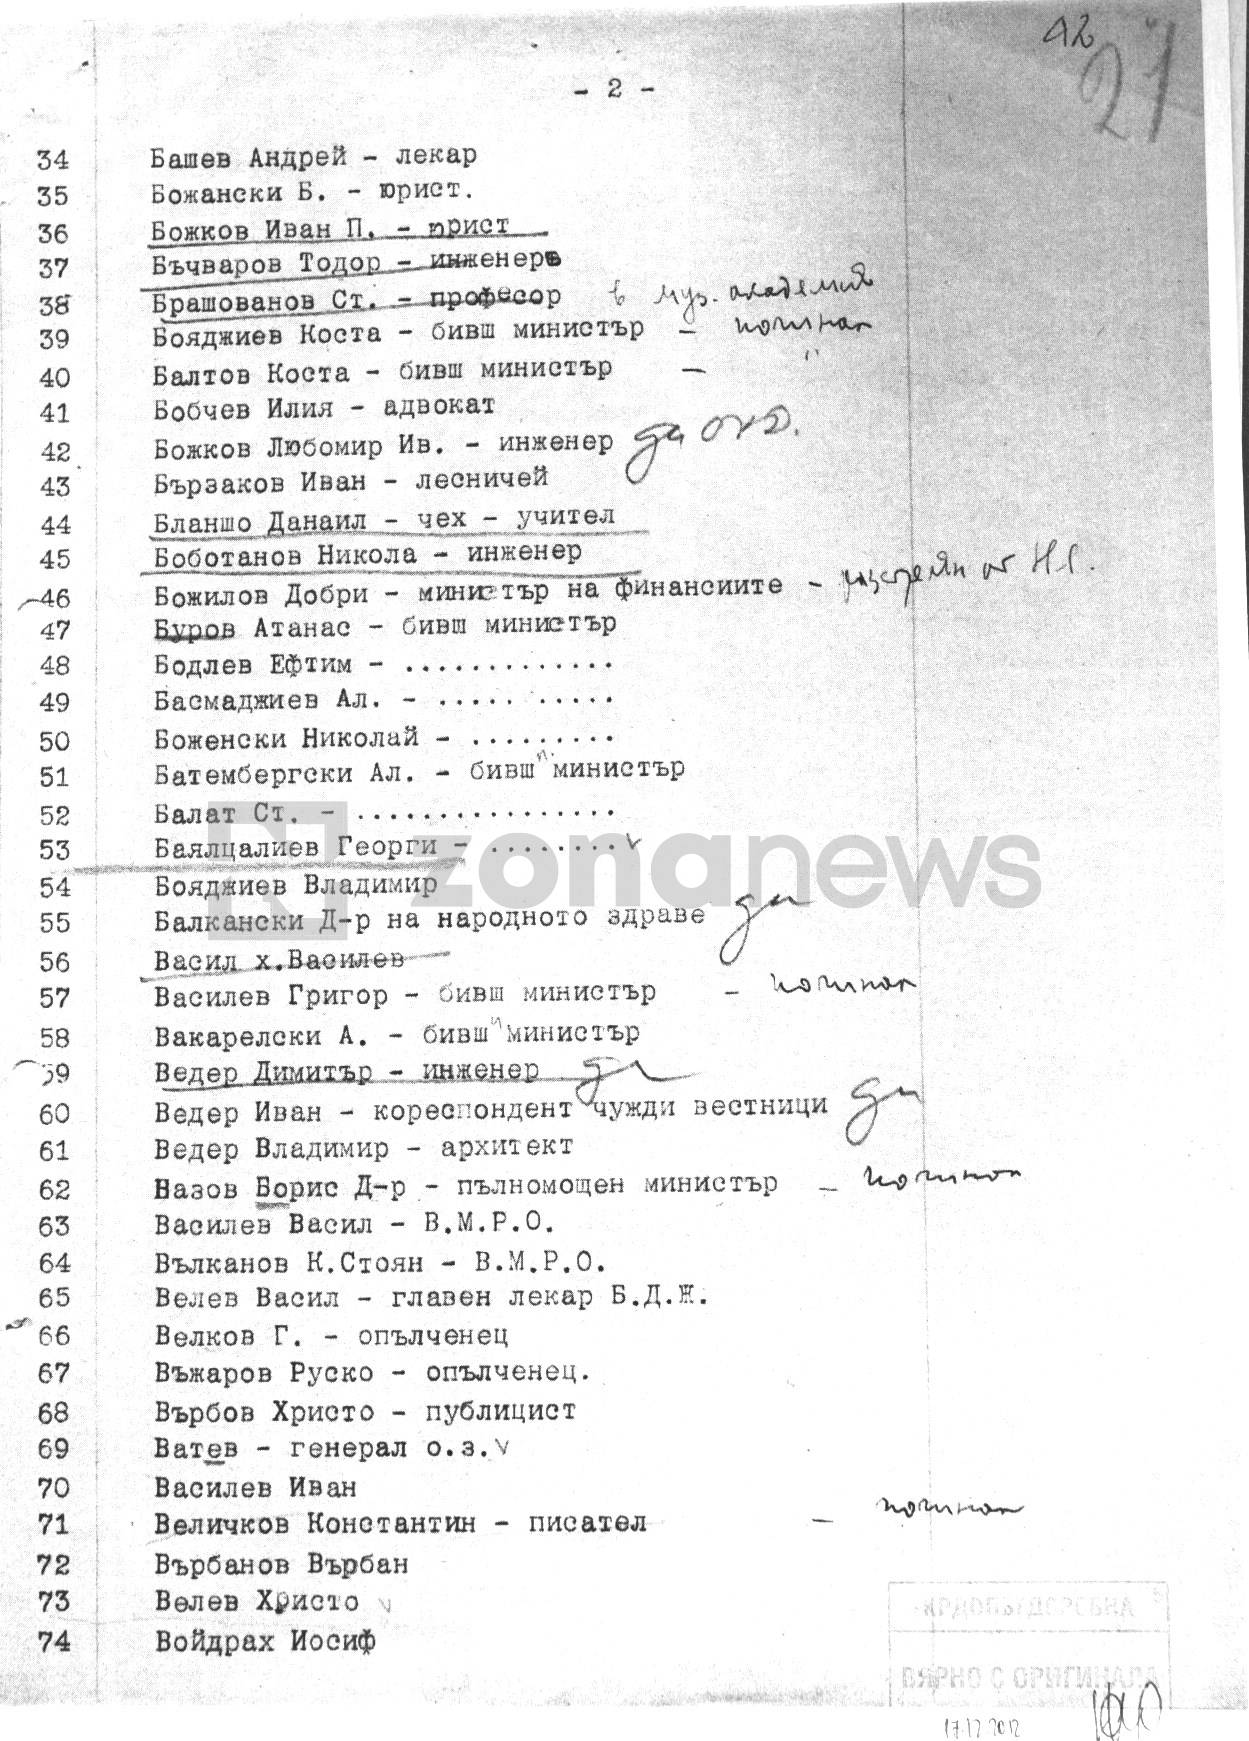 Документи от архива на КОМДОС за българското масонство (5)